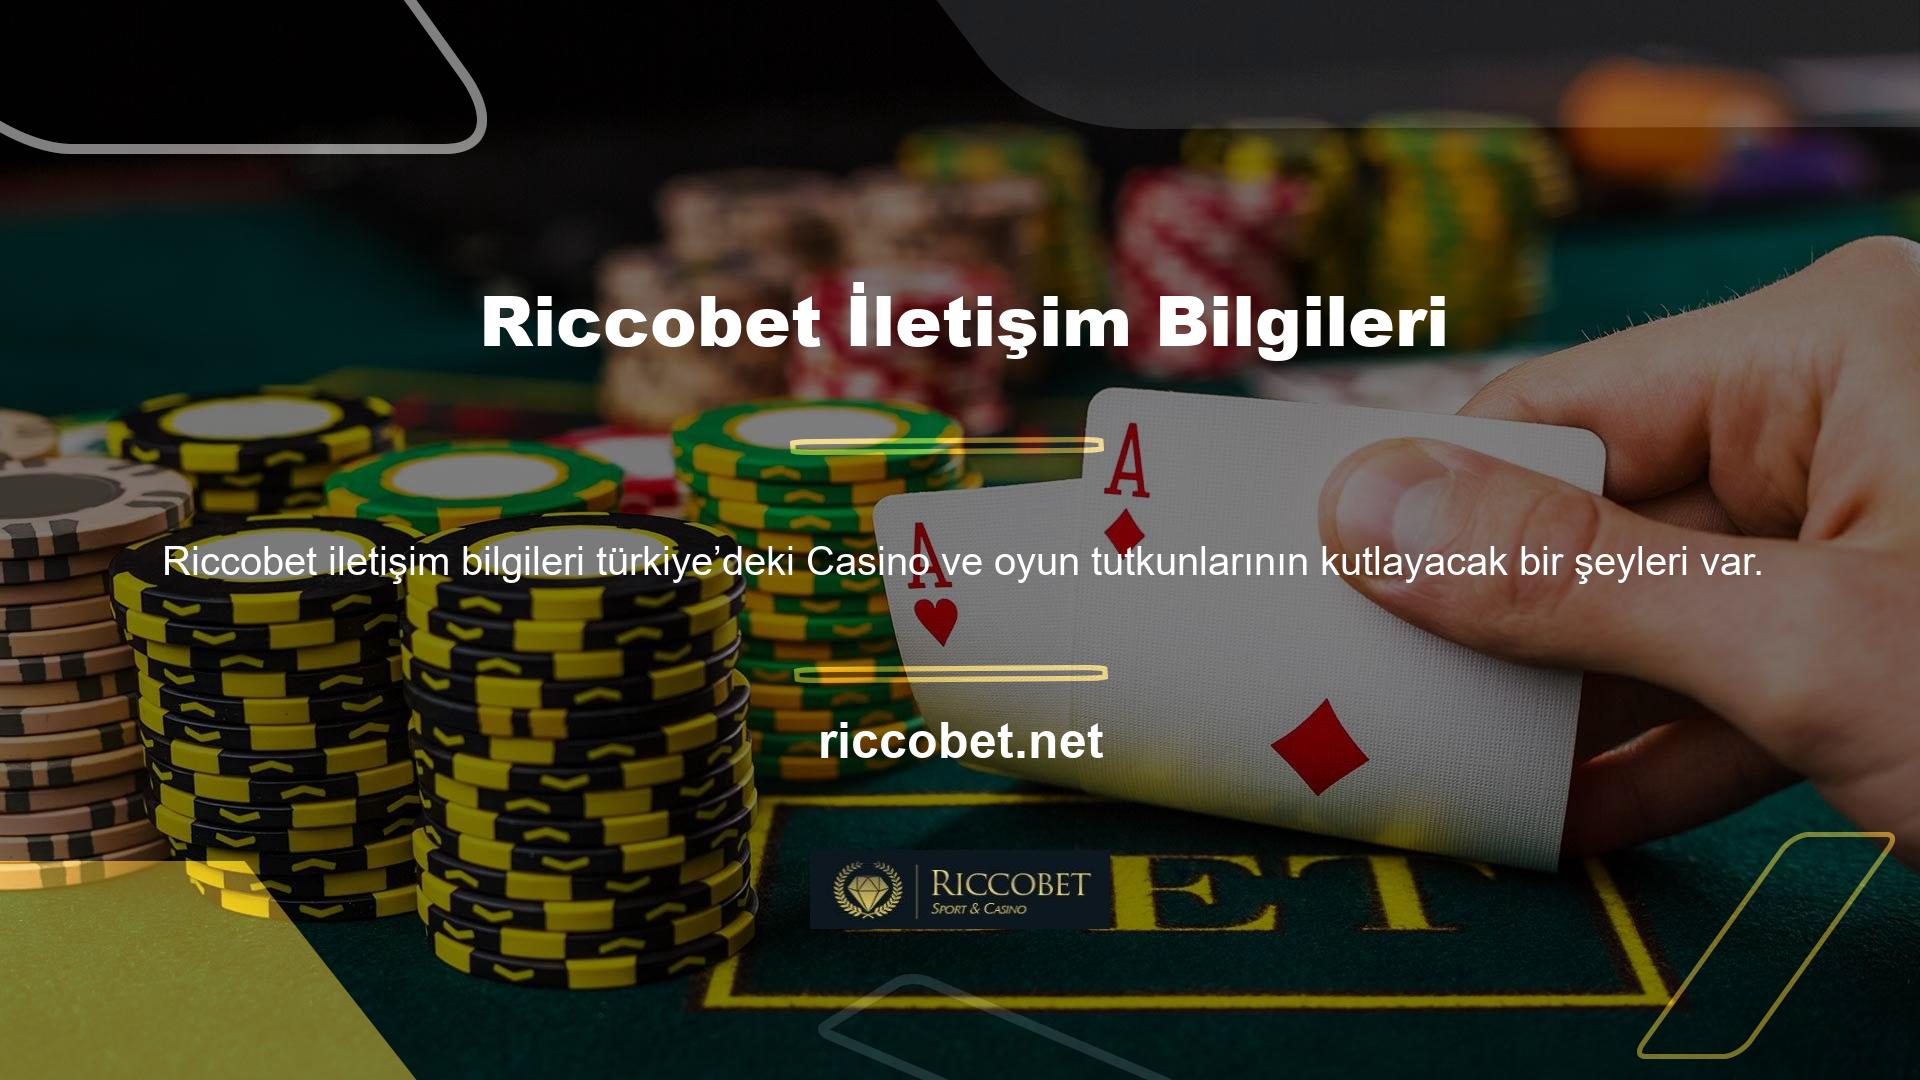 Avrupa pazarının önde gelen oyuncularından Riccobet, müşterilerinin ve rakiplerinin beğenisini ve güvenini kazanarak Türkiye’ye başarıyla açıldı